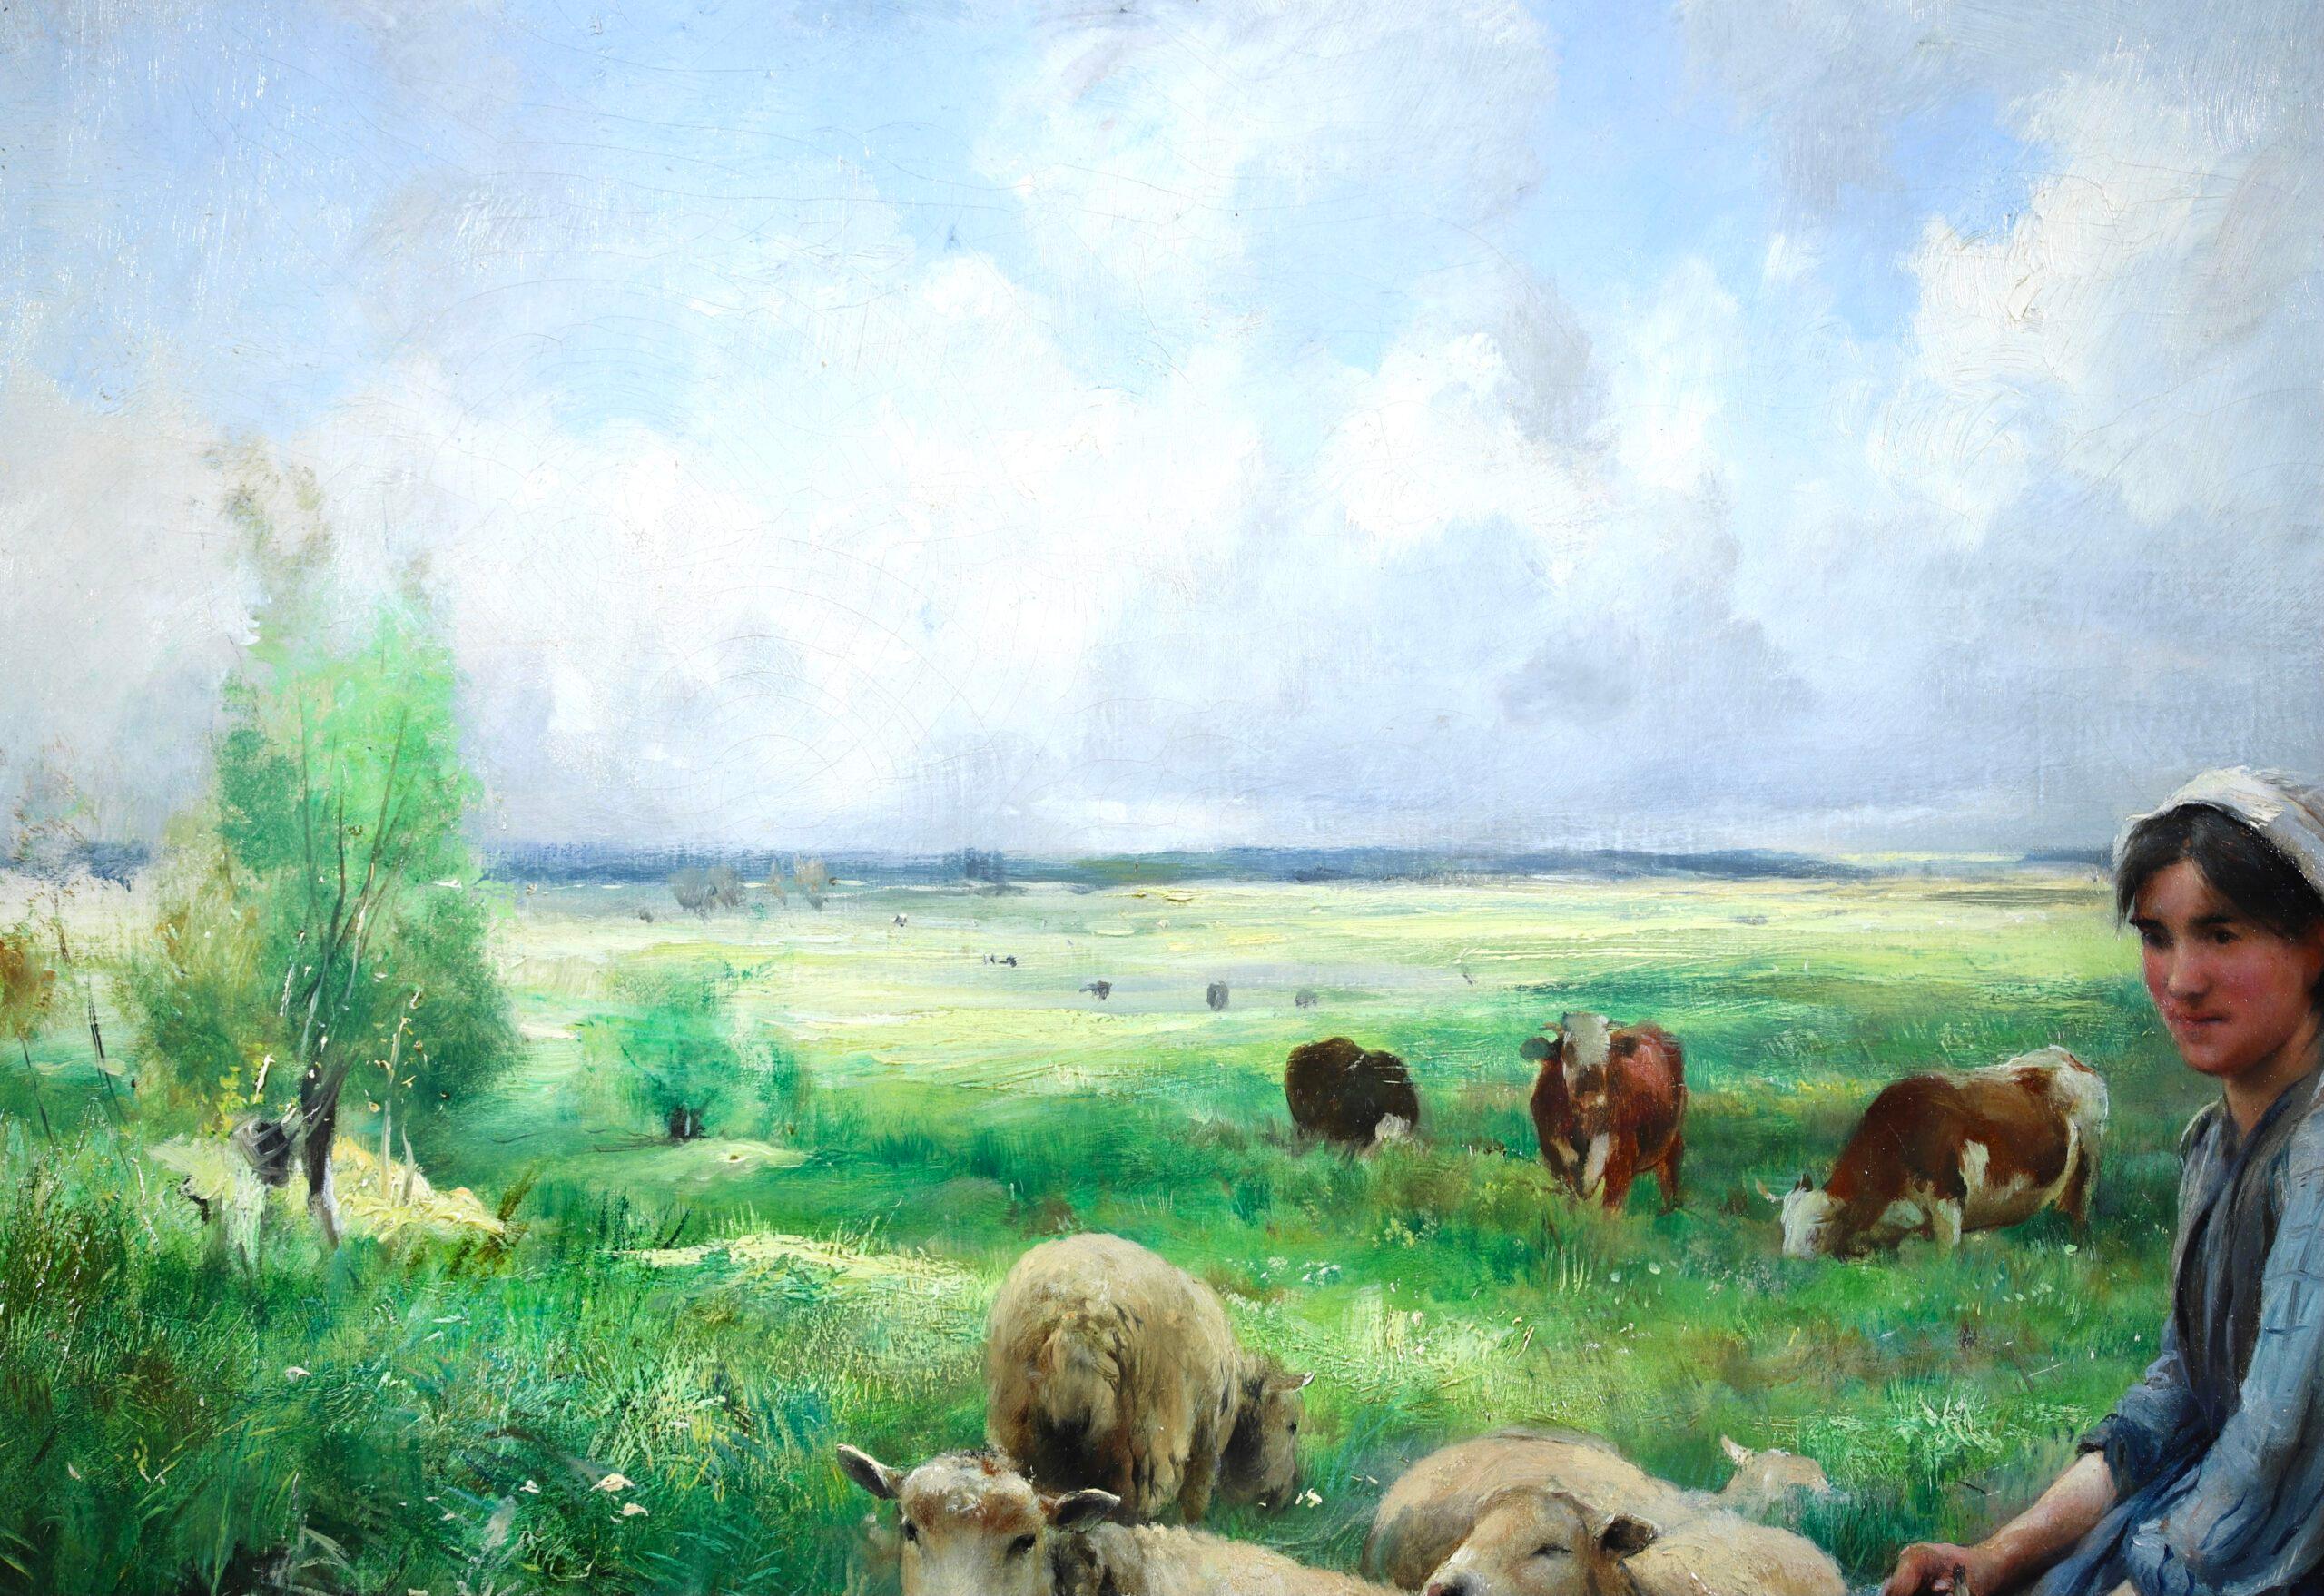 Huile sur toile impressionniste signée représentant un personnage et des animaux dans un paysage par le peintre français Julien Dupre. L'œuvre représente une bergère se reposant sur un rondin tandis que ses moutons paissent dans la prairie